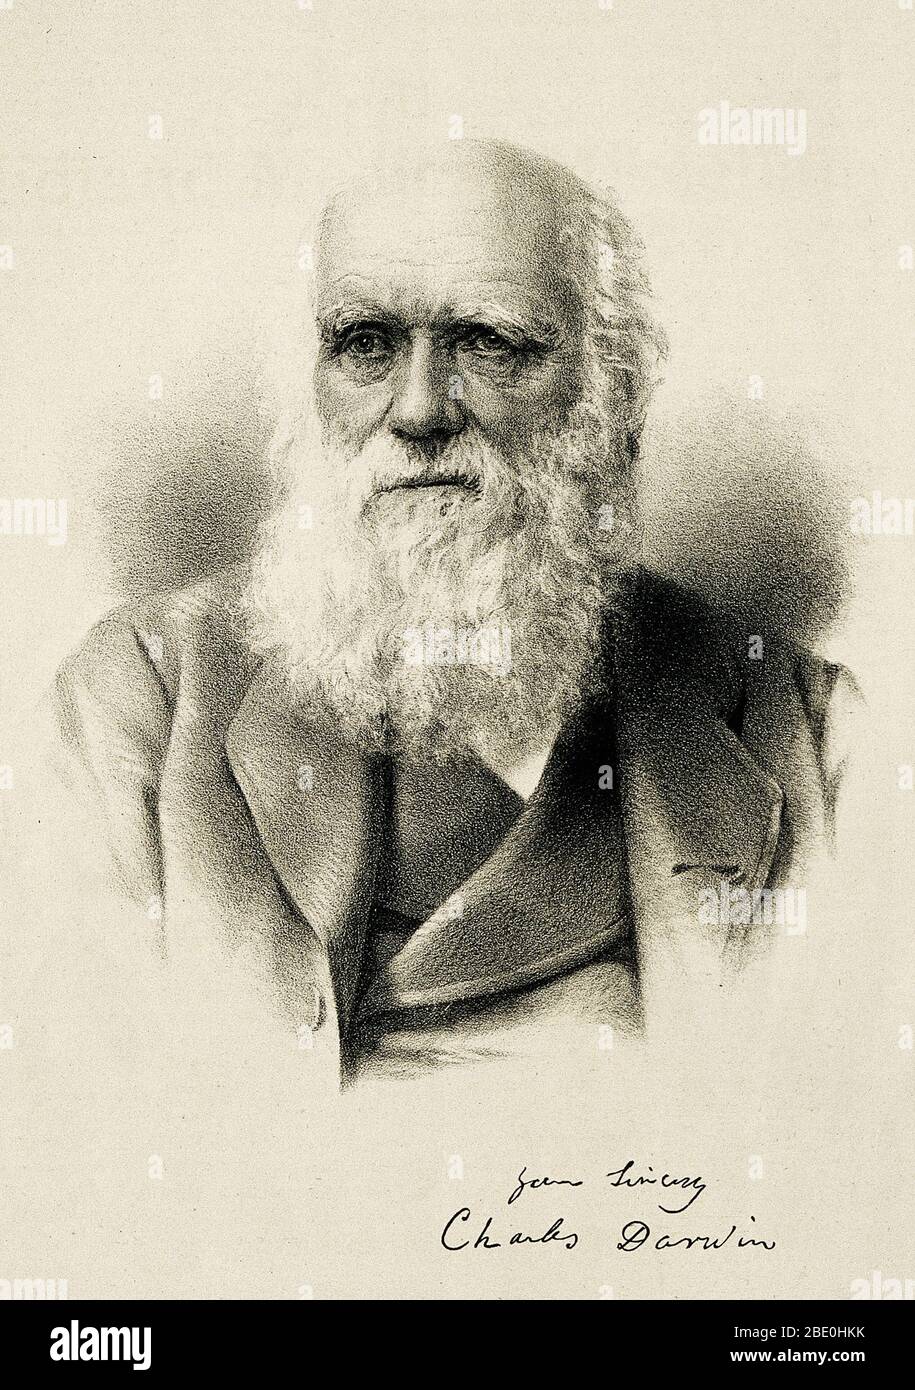 Charles Robert Darwin (12 de febrero de 1809 - 19 de abril de 1882) fue un naturalista Inglés, geólogo y biólogo. Estudios en la Universidad de Cambridge alentó su pasión por las ciencias naturales. Intrigado por la distribución geográfica de la fauna silvestre y fósiles recogió en el viaje de cinco años en el HMS Beagle, Darwin comenzó investigaciones detalladas y en 1838 concibió su teoría de la selección natural. Aunque discutió sus ideas con algunos naturalistas, necesitaba tiempo para investigaciones extensas y sus trabajos geológicos tenían prioridad. Él estaba redactando su teoría en 1858 cuando Alfred Russel Wallace Foto de stock